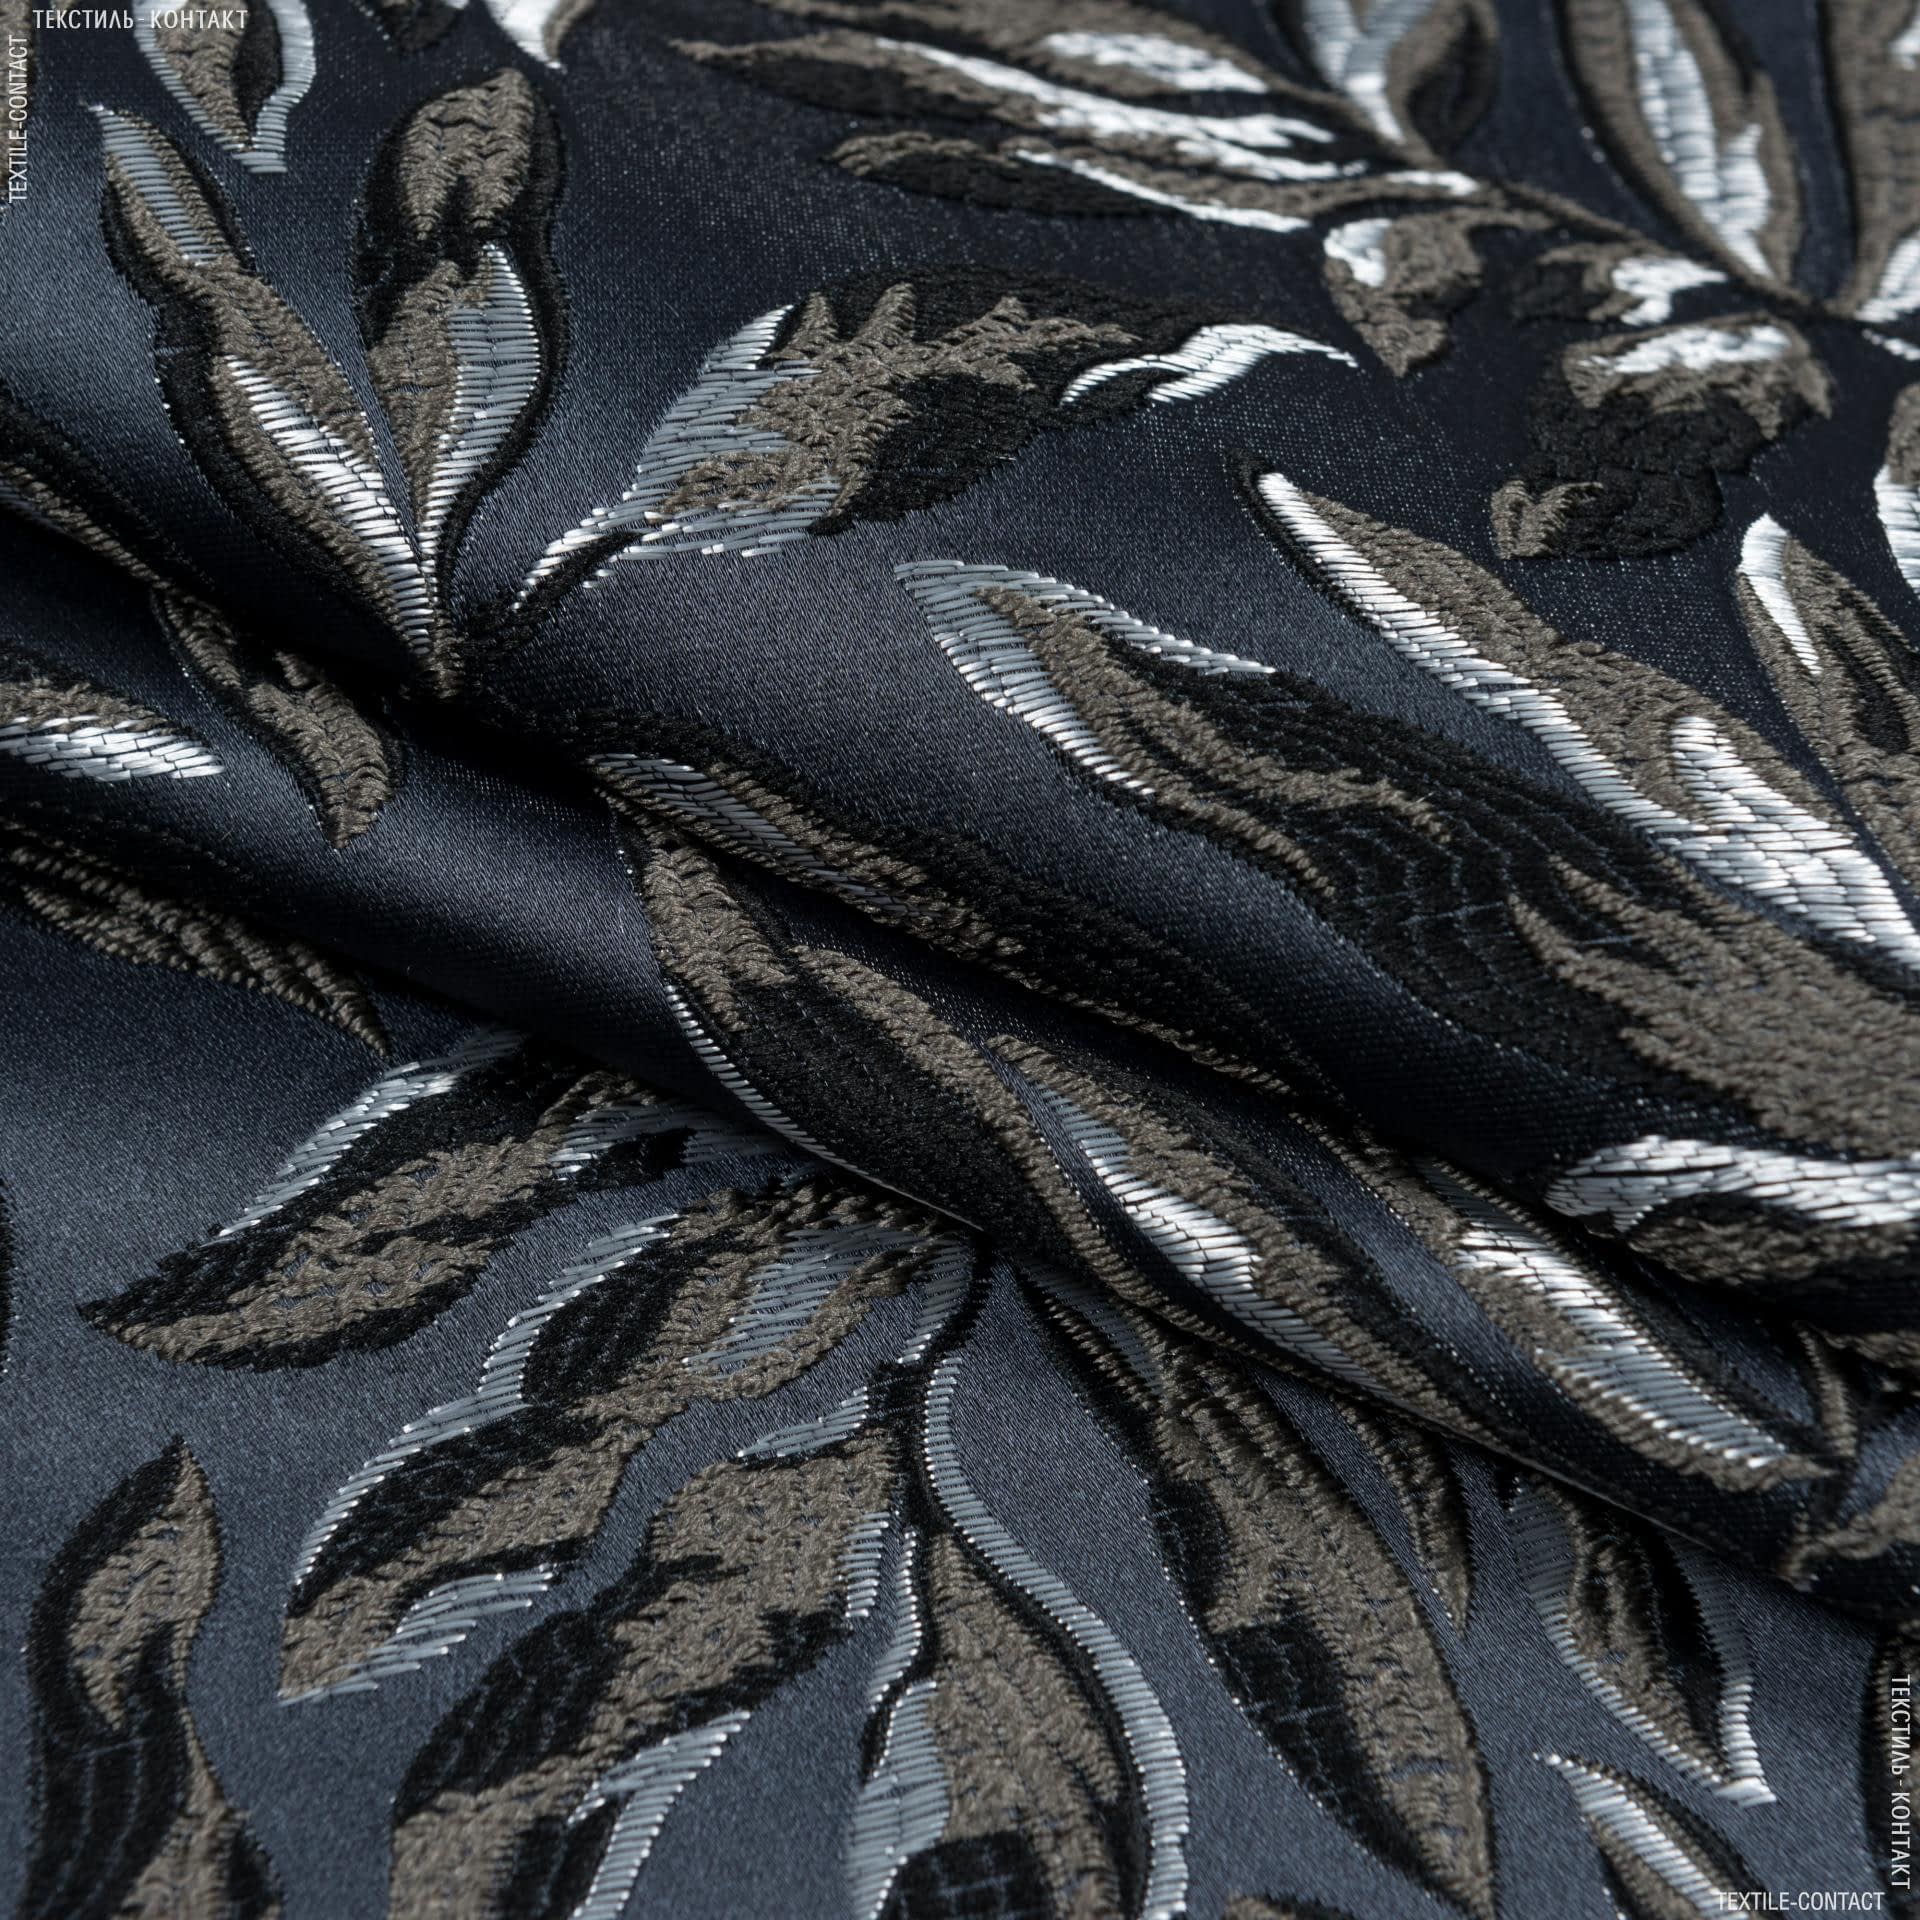 Ткани портьерные ткани - Декоративная ткань Роял листья /ROYAL LEAF серо-черные  фон графит